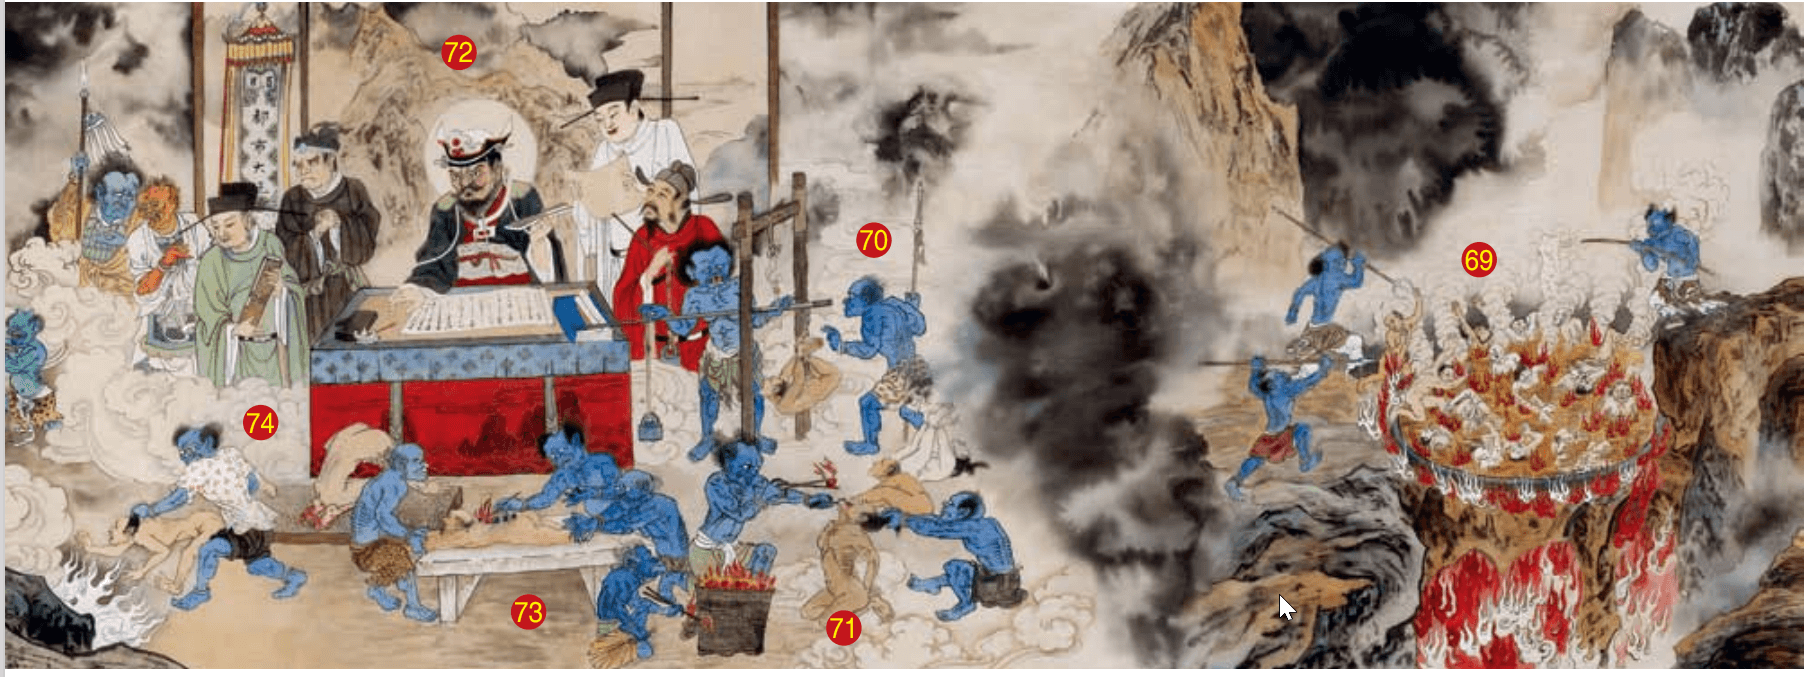 第七殿泰山王：油釜地獄、磅稱獄、鐵丸獄